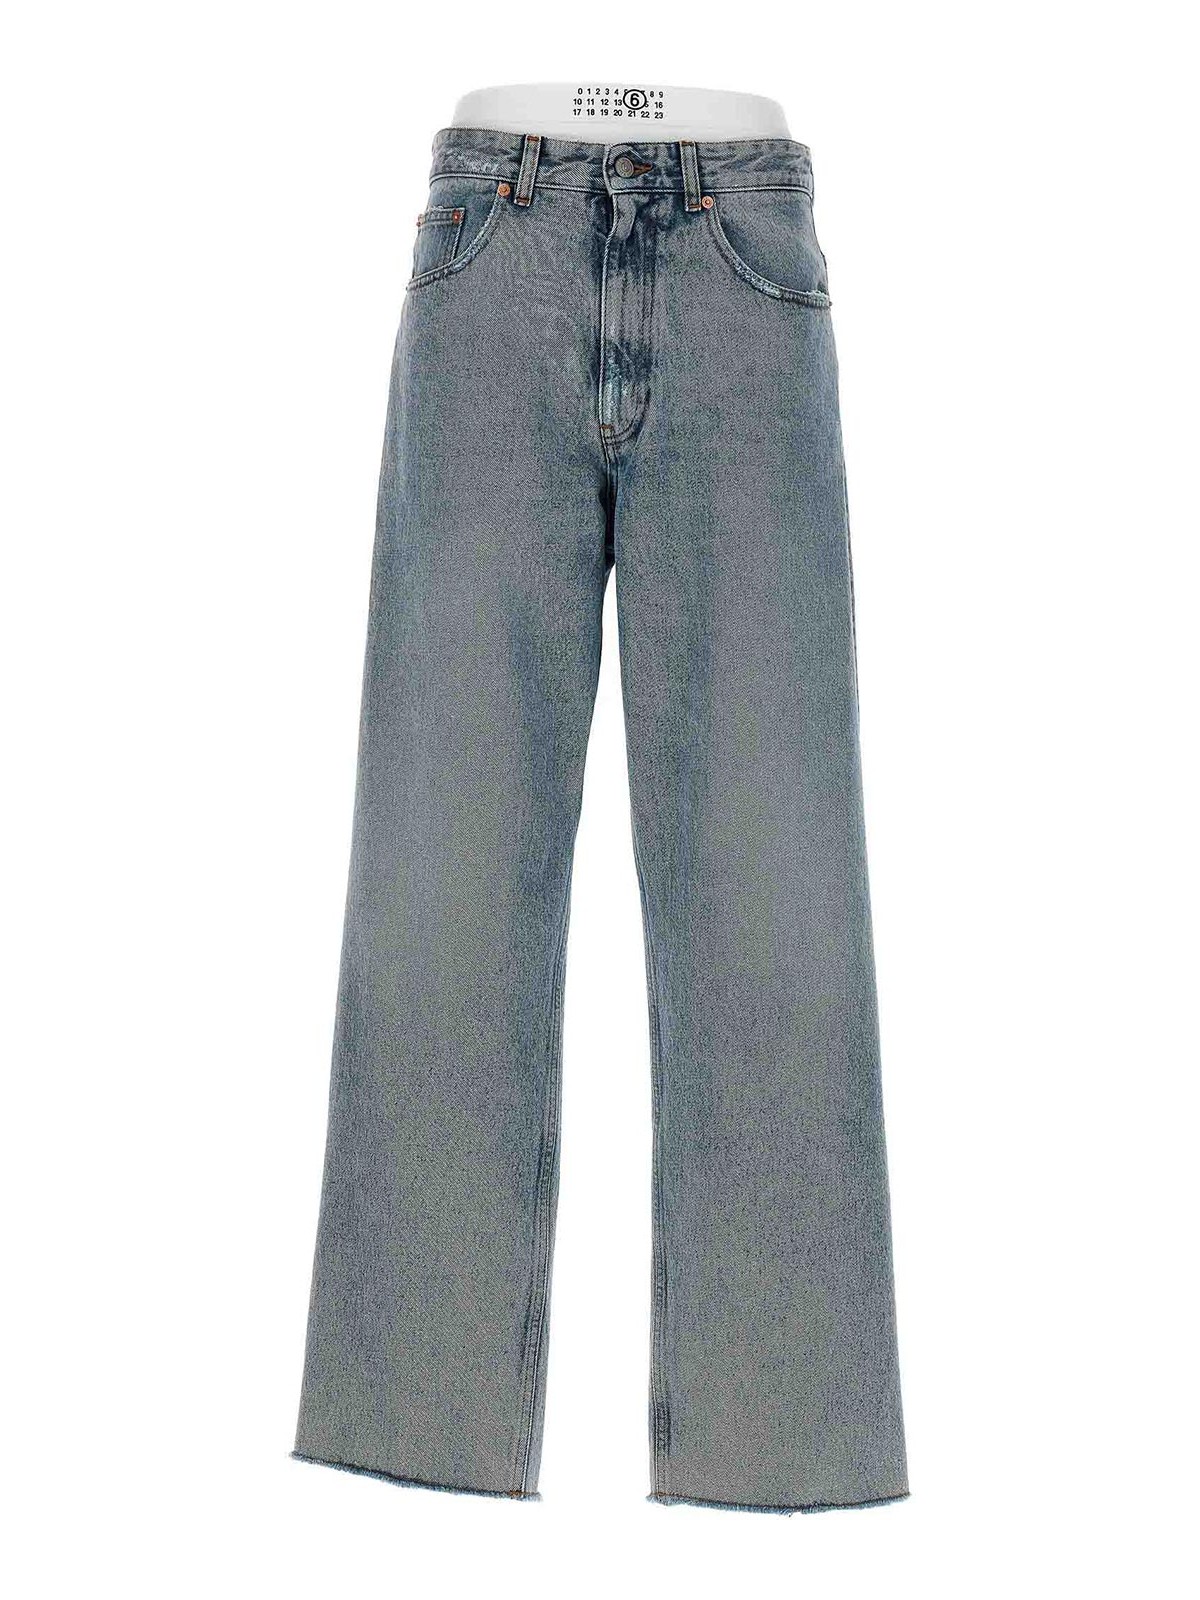 Bootcut jeans MM6 Maison Margiela - Boxer insert jeans - S62LB0149S30589976